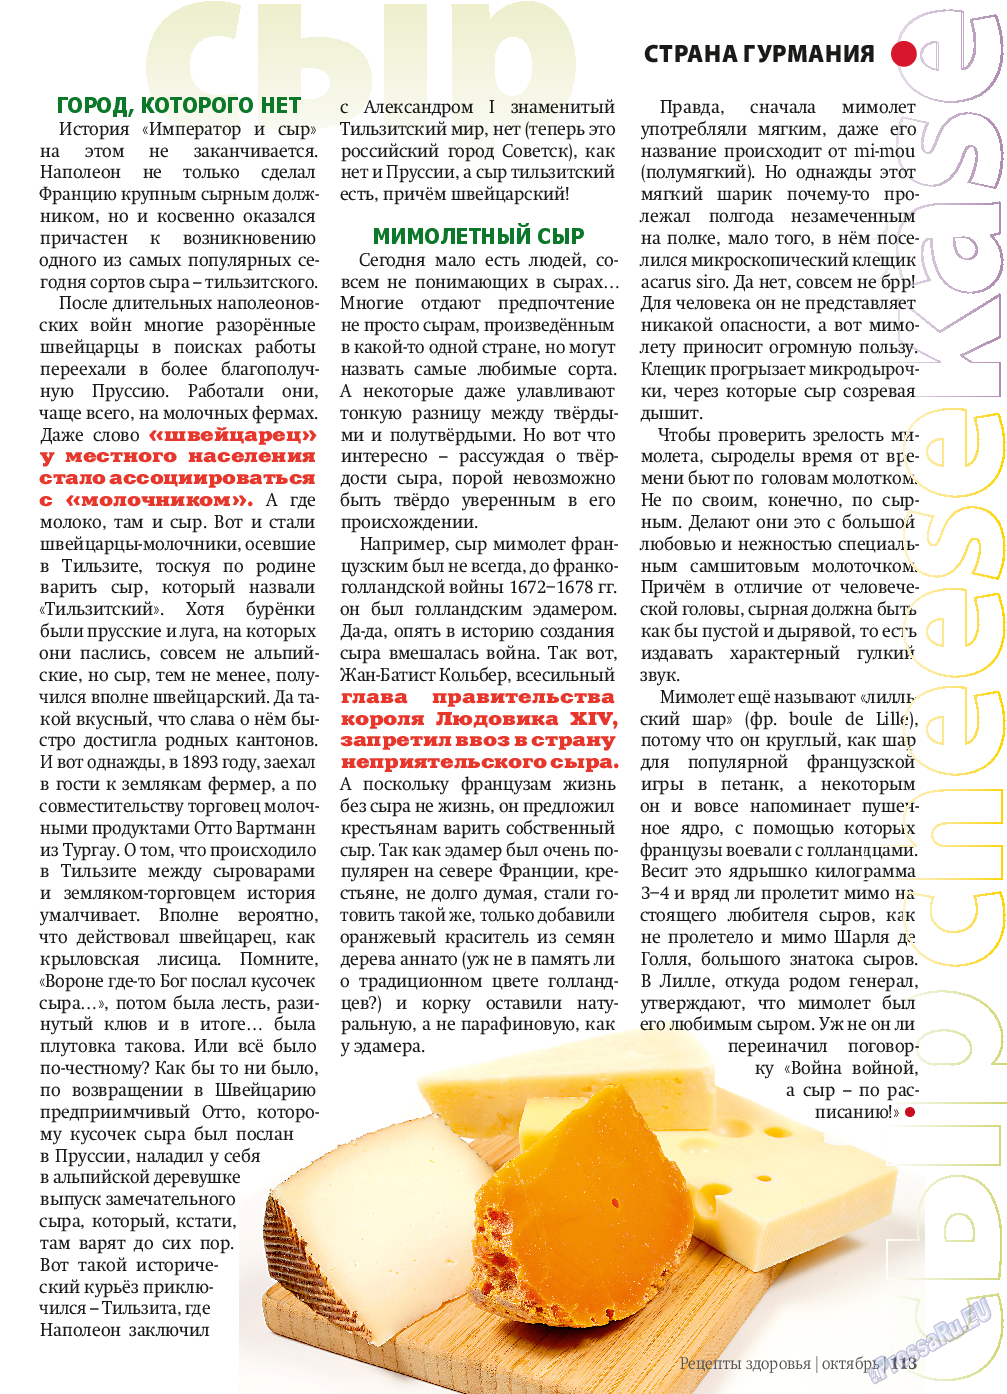 Рецепты здоровья, журнал. 2013 №10 стр.113